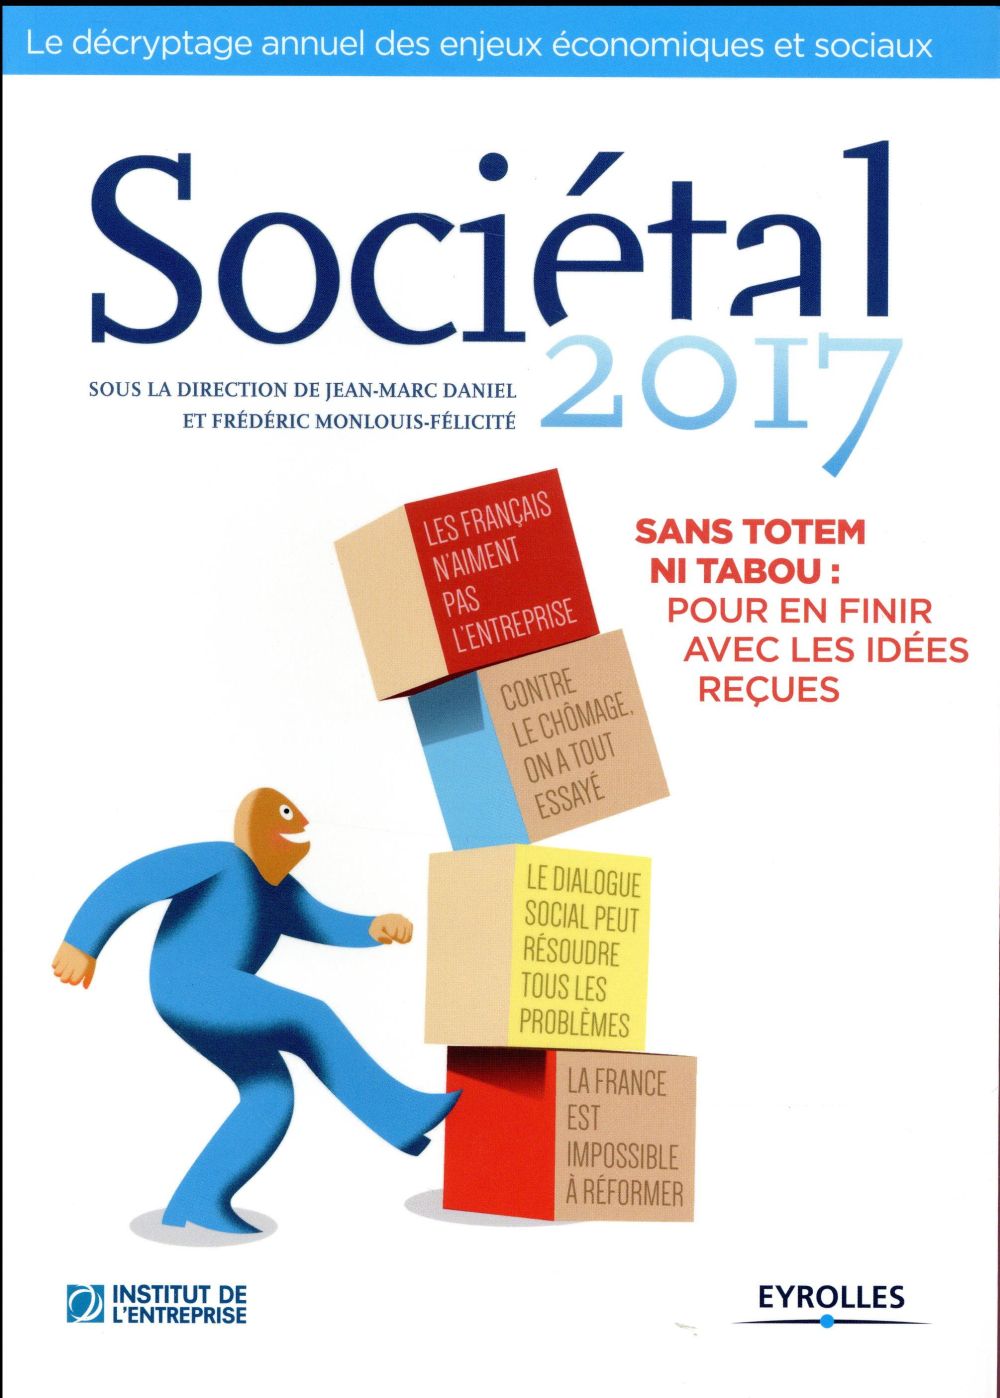 SOCIETAL 2017 - SANS TOTEM NI TABOU : POUR EN FINIR AVEC LES IDEES RECUES